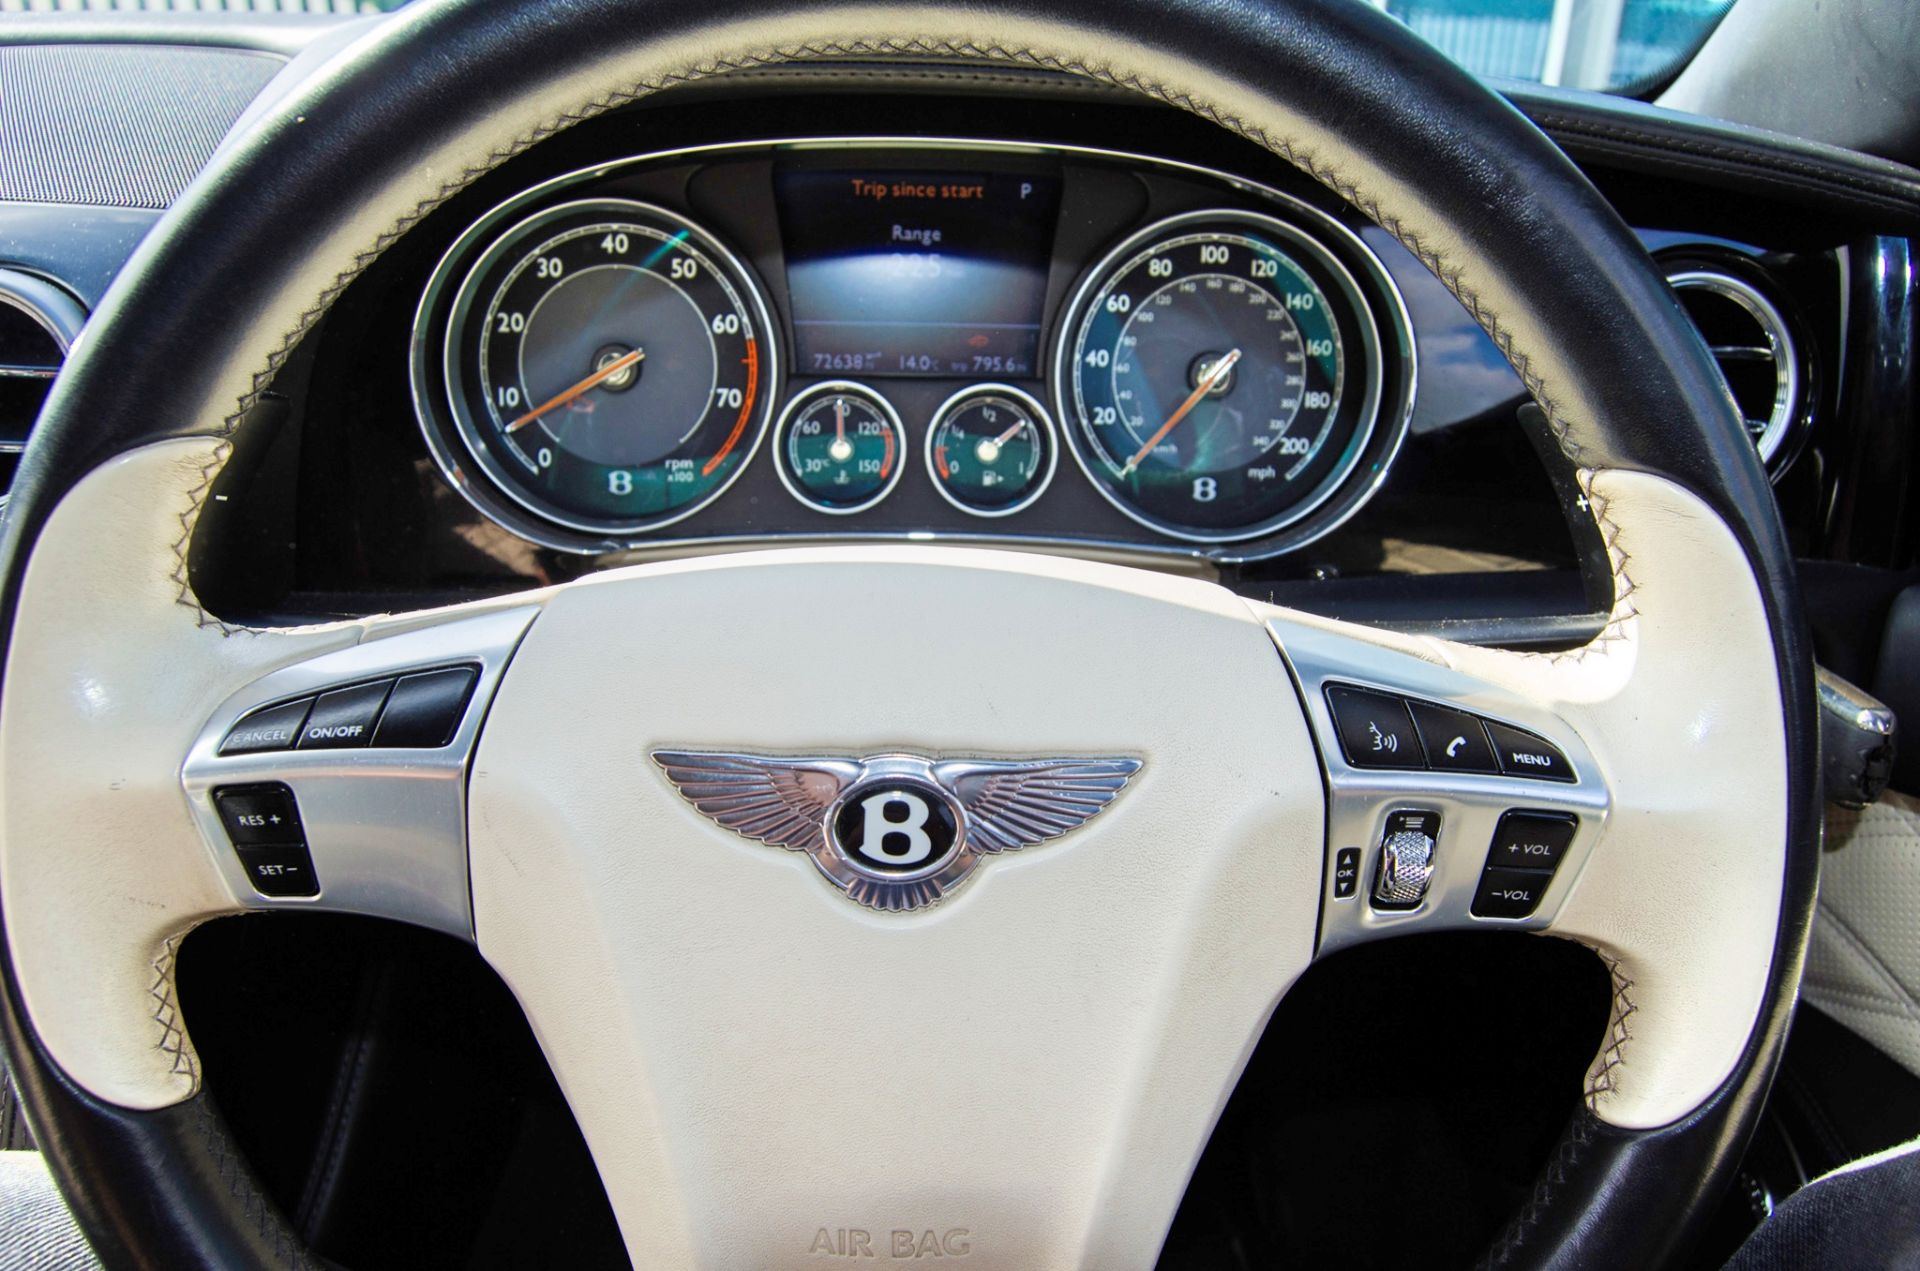 2013 Bentley Flying Spur 5998cc W12 Auto 4 door saloon car - Image 44 of 55